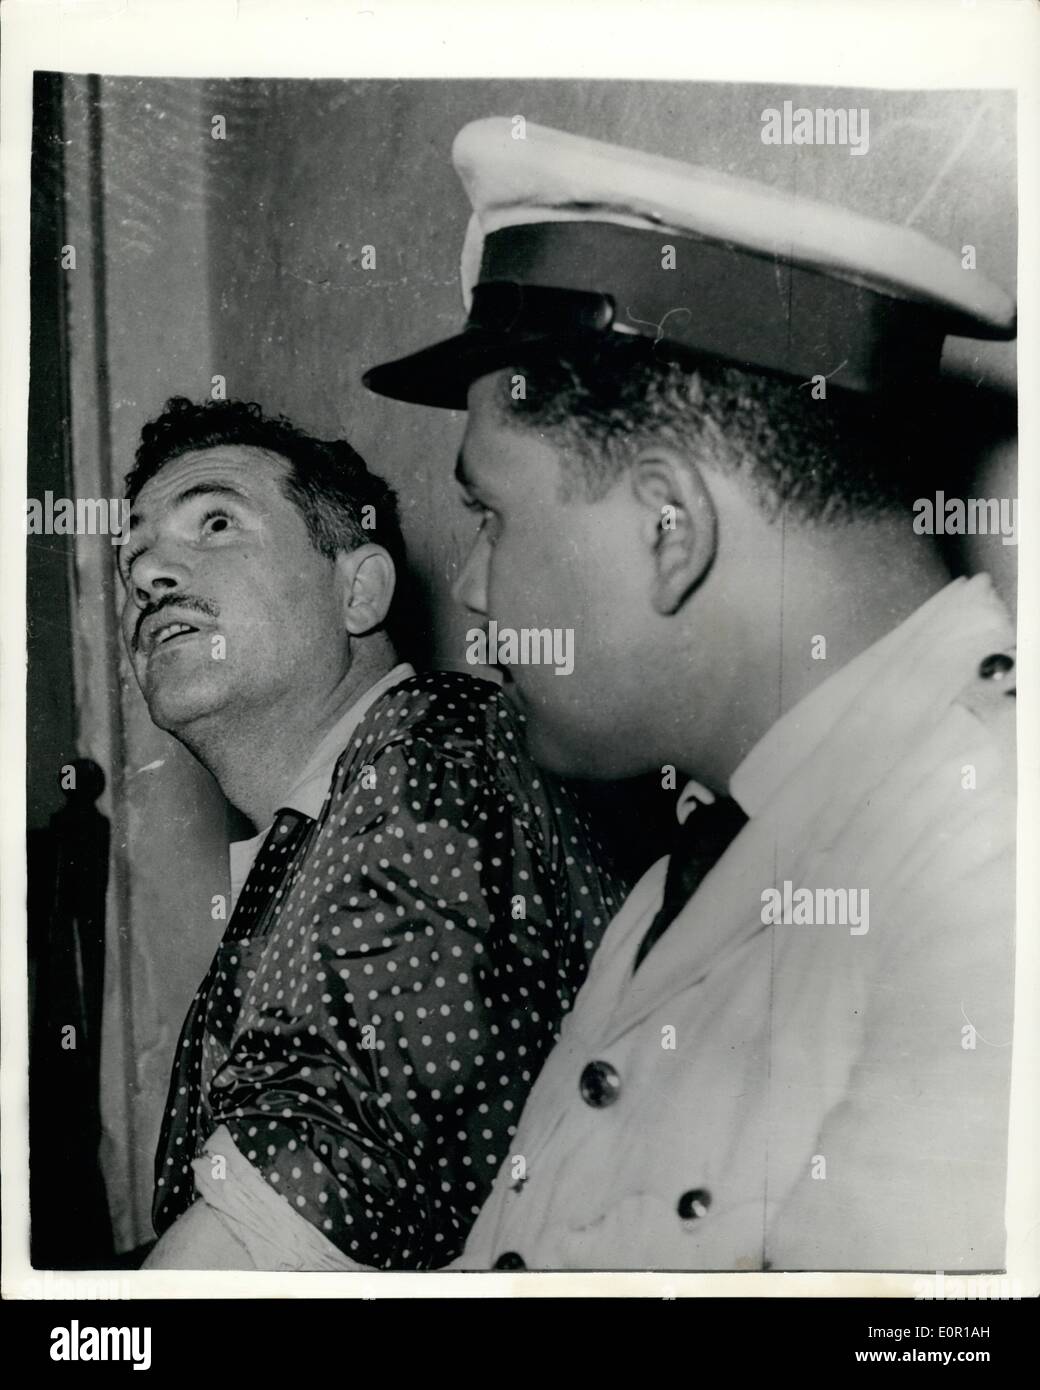 8. August 1957 - zwölf Angeklagte in Kairo Verschwörung Café. Angebliche Verschwörung, Präsident Nasser zu töten. Zwölf Personen stehen vor Gericht in Kairo beschuldigt, der Versuch, das Regime zu stürzen und zu Oberst Nasser ermorden. Sie werden auch beschuldigt, Planung, General Neguie - ehemaligen Präsident von Hausarrest zu befreien und um ihn wieder zu ernennen Präsident - und auch der Planung der Suer Canal de verstaatlichen. Foto zeigt allgemeine ATEF Nasser Chef des Angeklagten - vor Gericht während der Verhandlung. Stockfoto